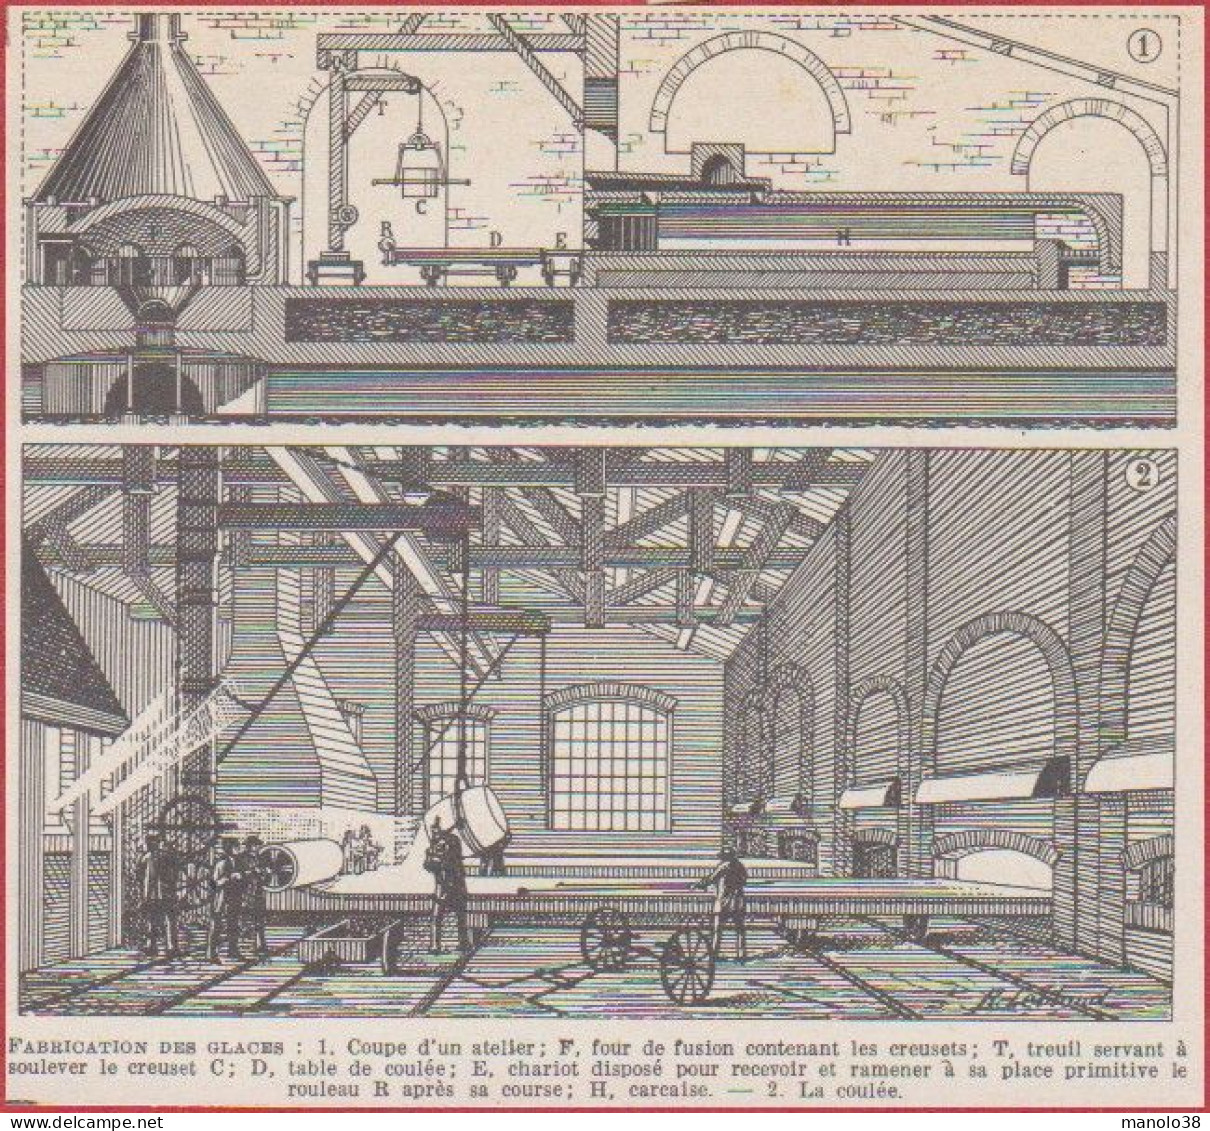 Fabrication De Glaces. Glace. Verre. Illustration R Leblond. Larousse 1948. - Historical Documents